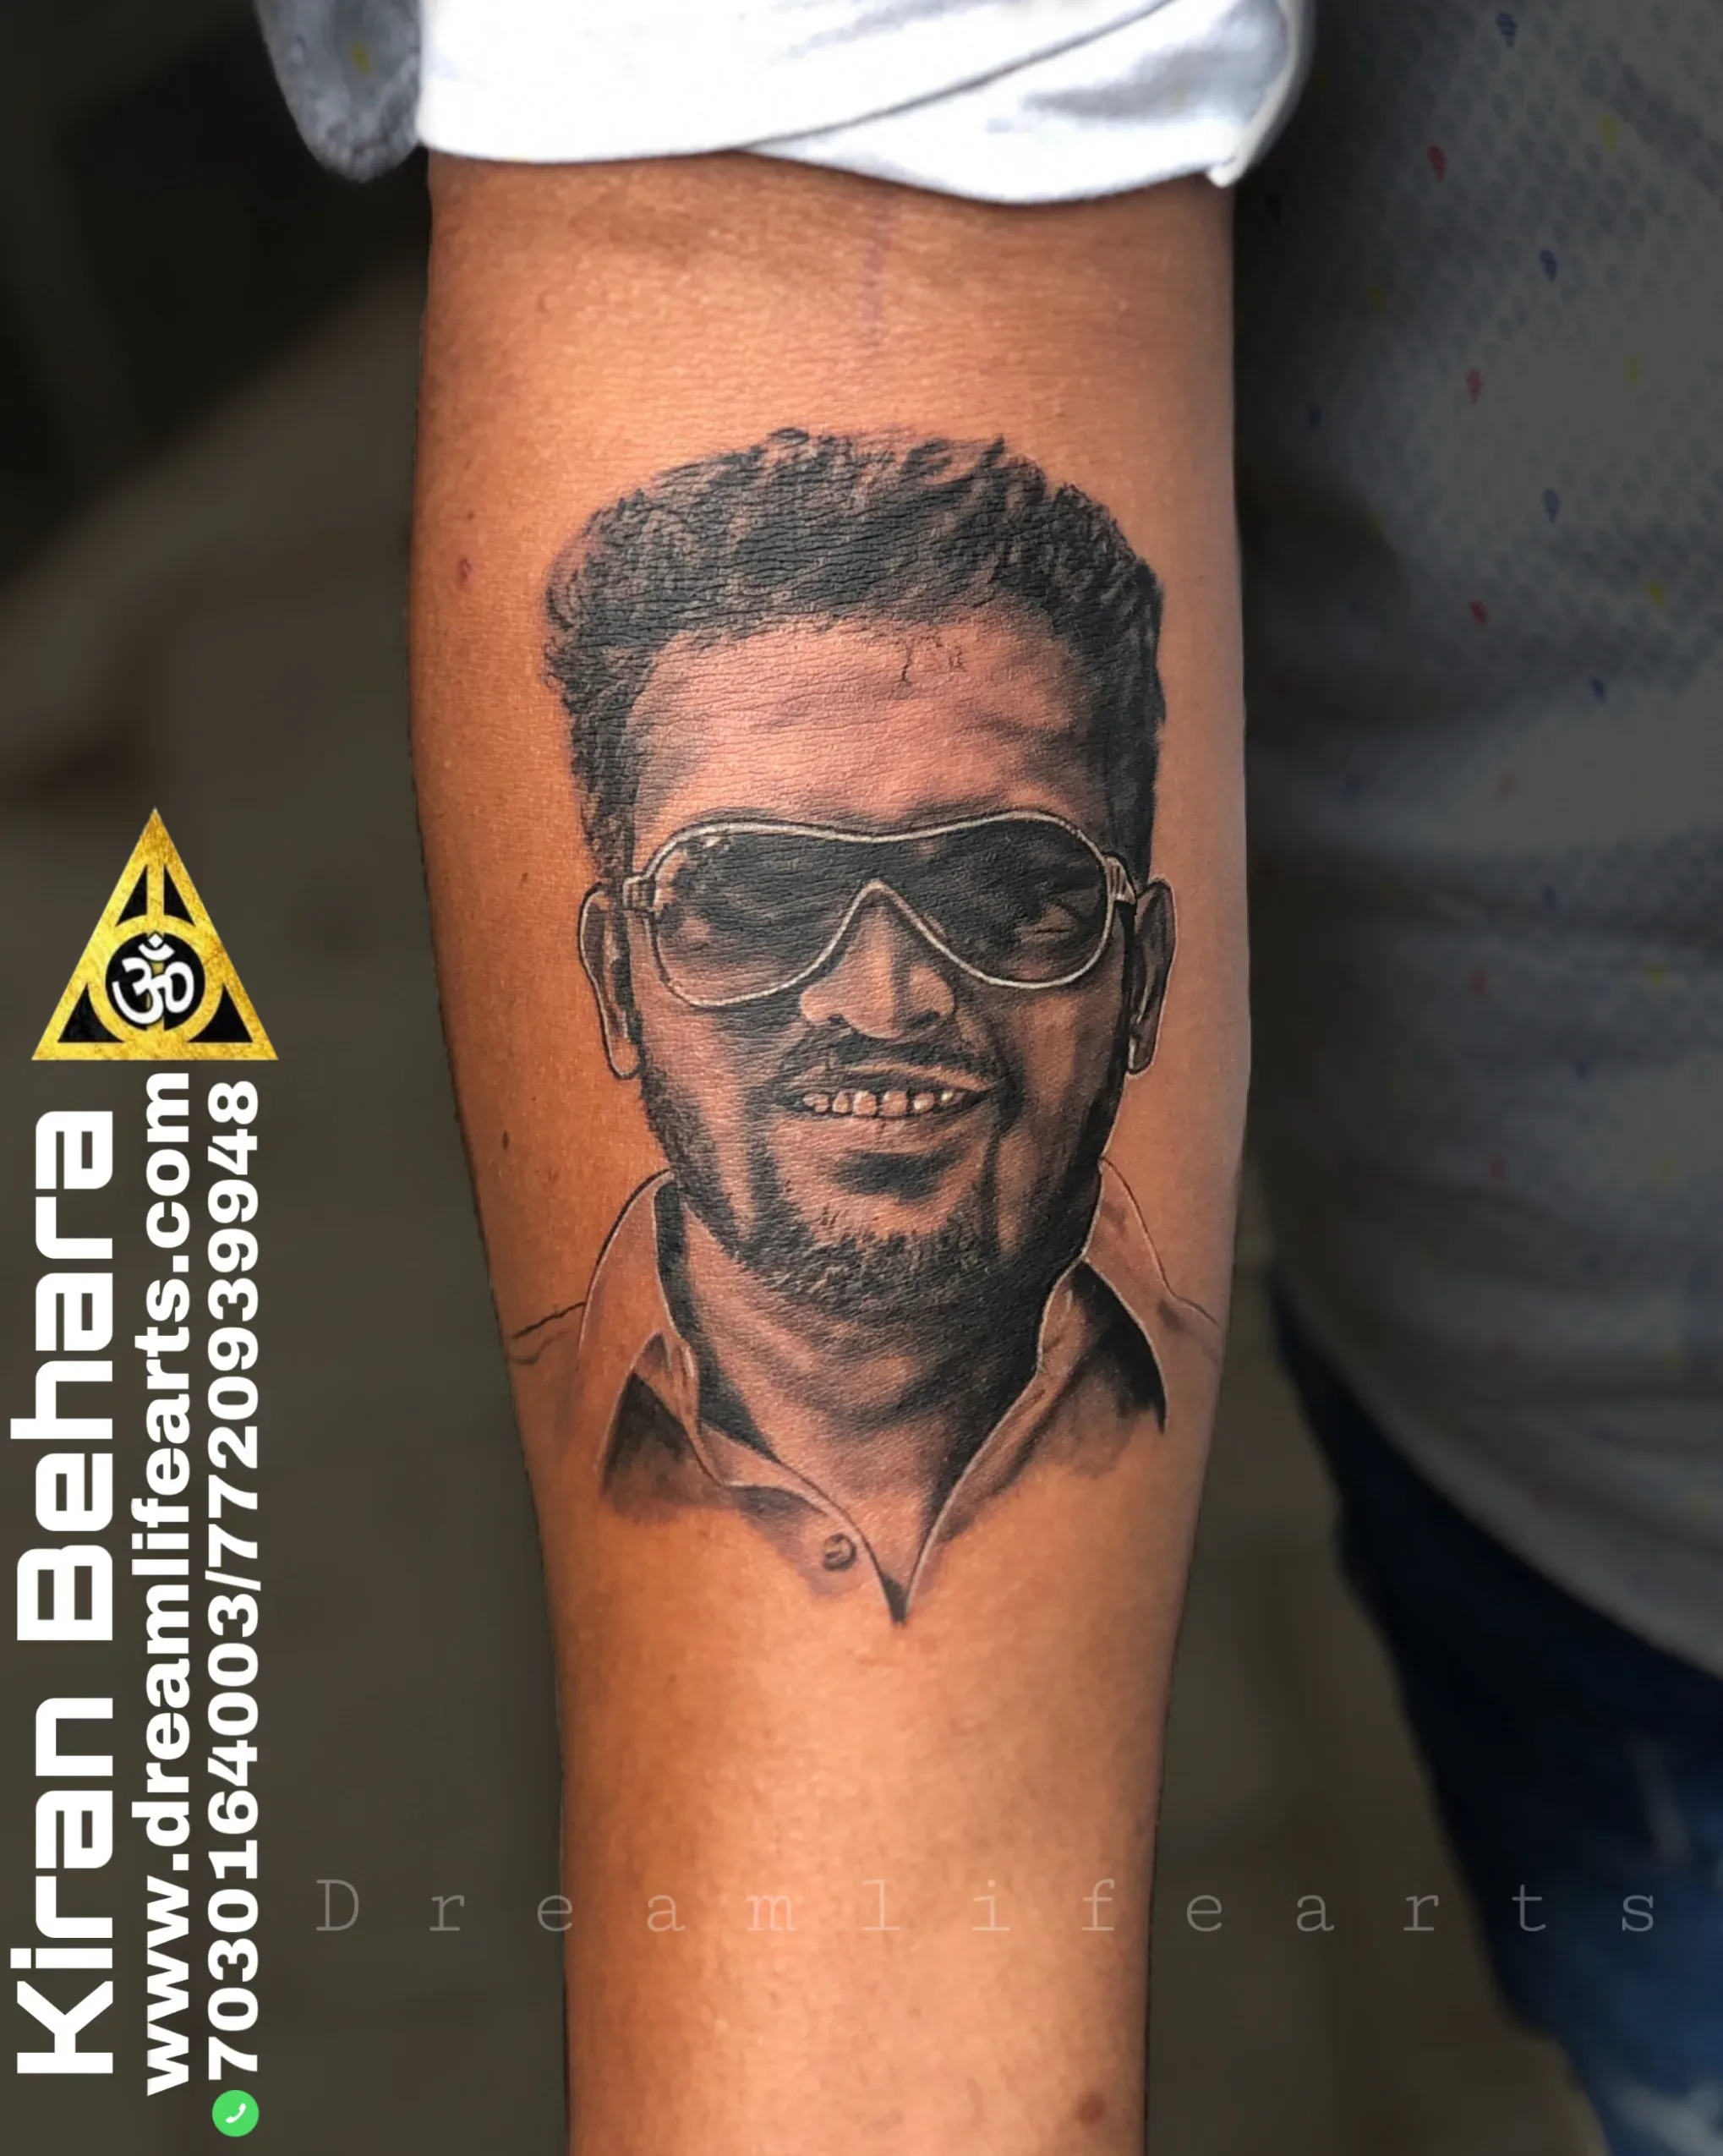 Vijay shah - Abstract Tattoo | Big Tattoo Planet